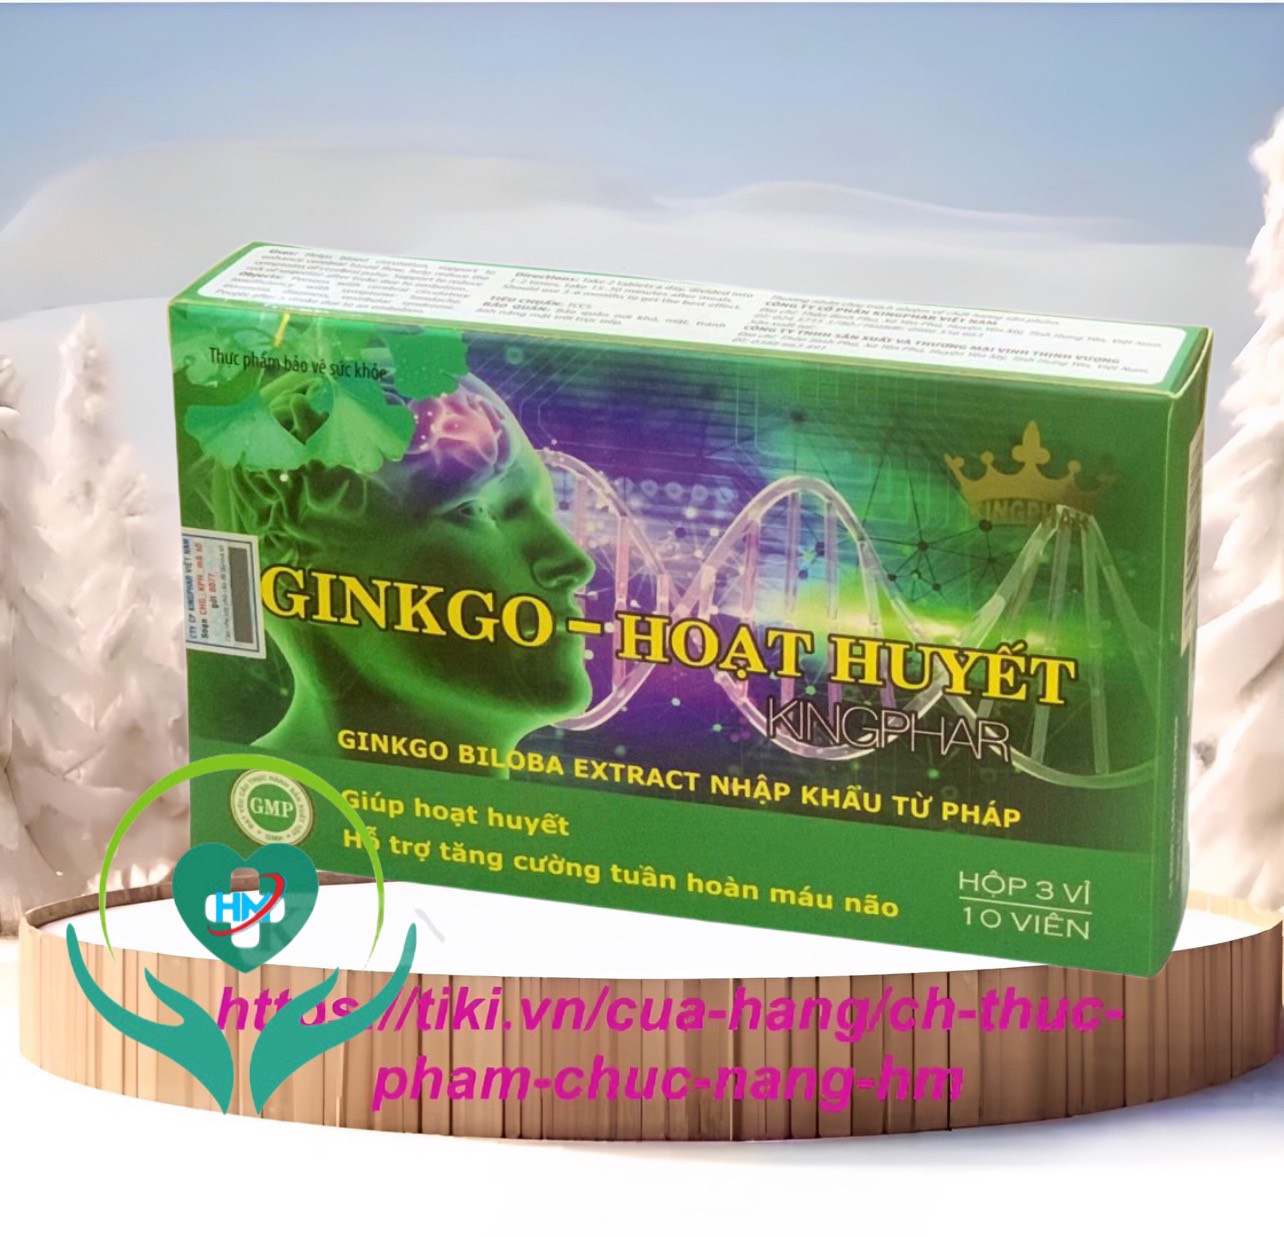 Viên uống tăng cường tuần hoàn não Ginkgo - Hoạt huyết Kingphar, hộp 30v